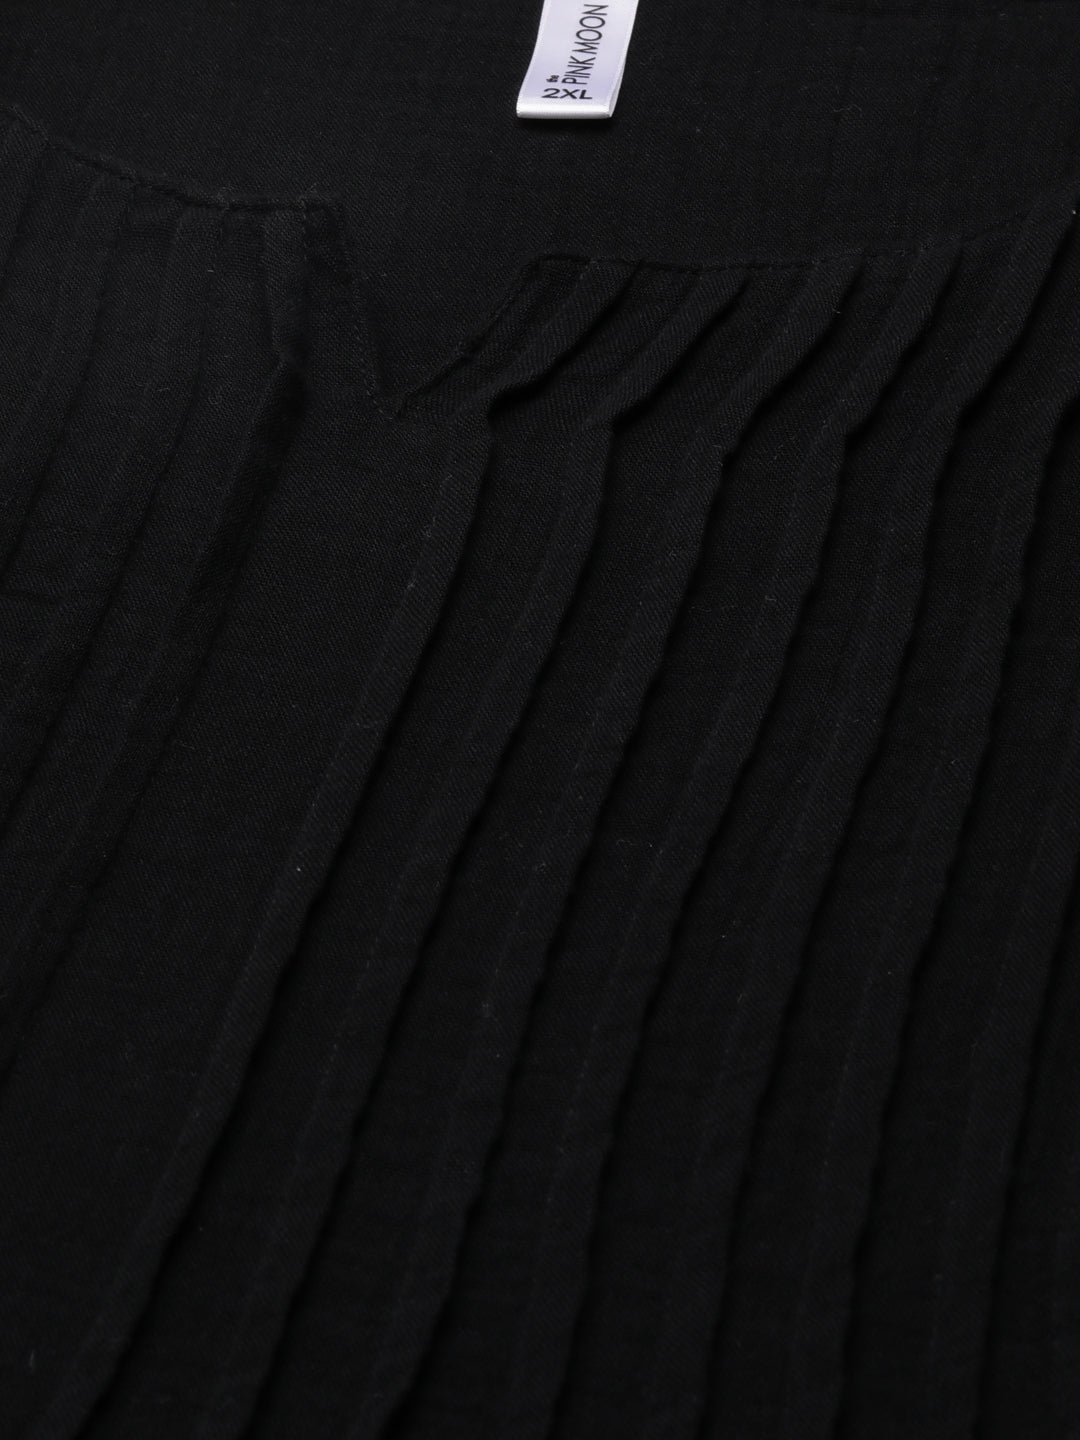 BLACK PINTUK DRESS